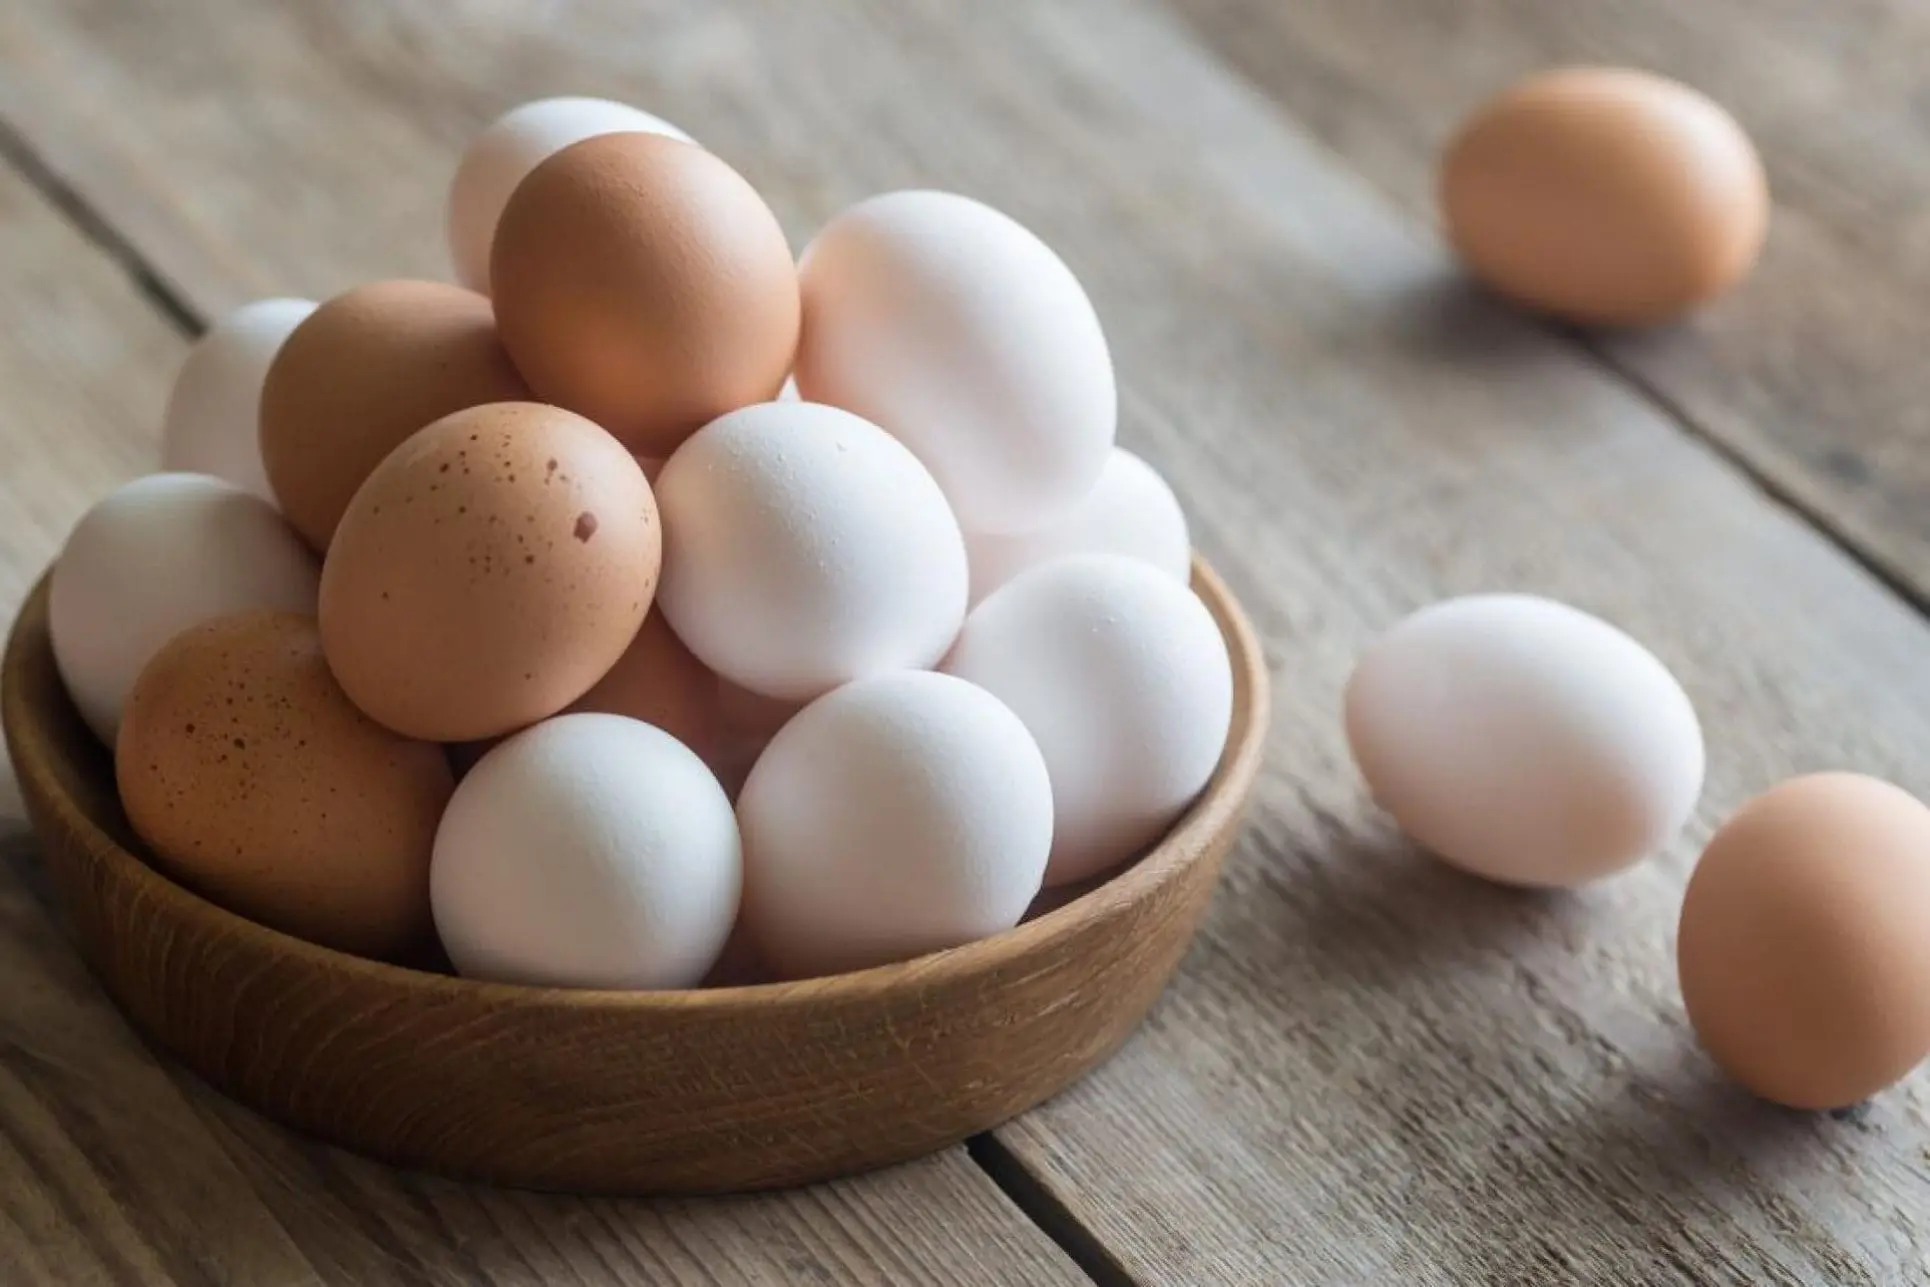 تخم مرغ هایی به رنگ سفید و قهوه ای که در ظرف چوبی قرار دارد و در اطراف ظرف نیز تخم مرغ وجود دارد